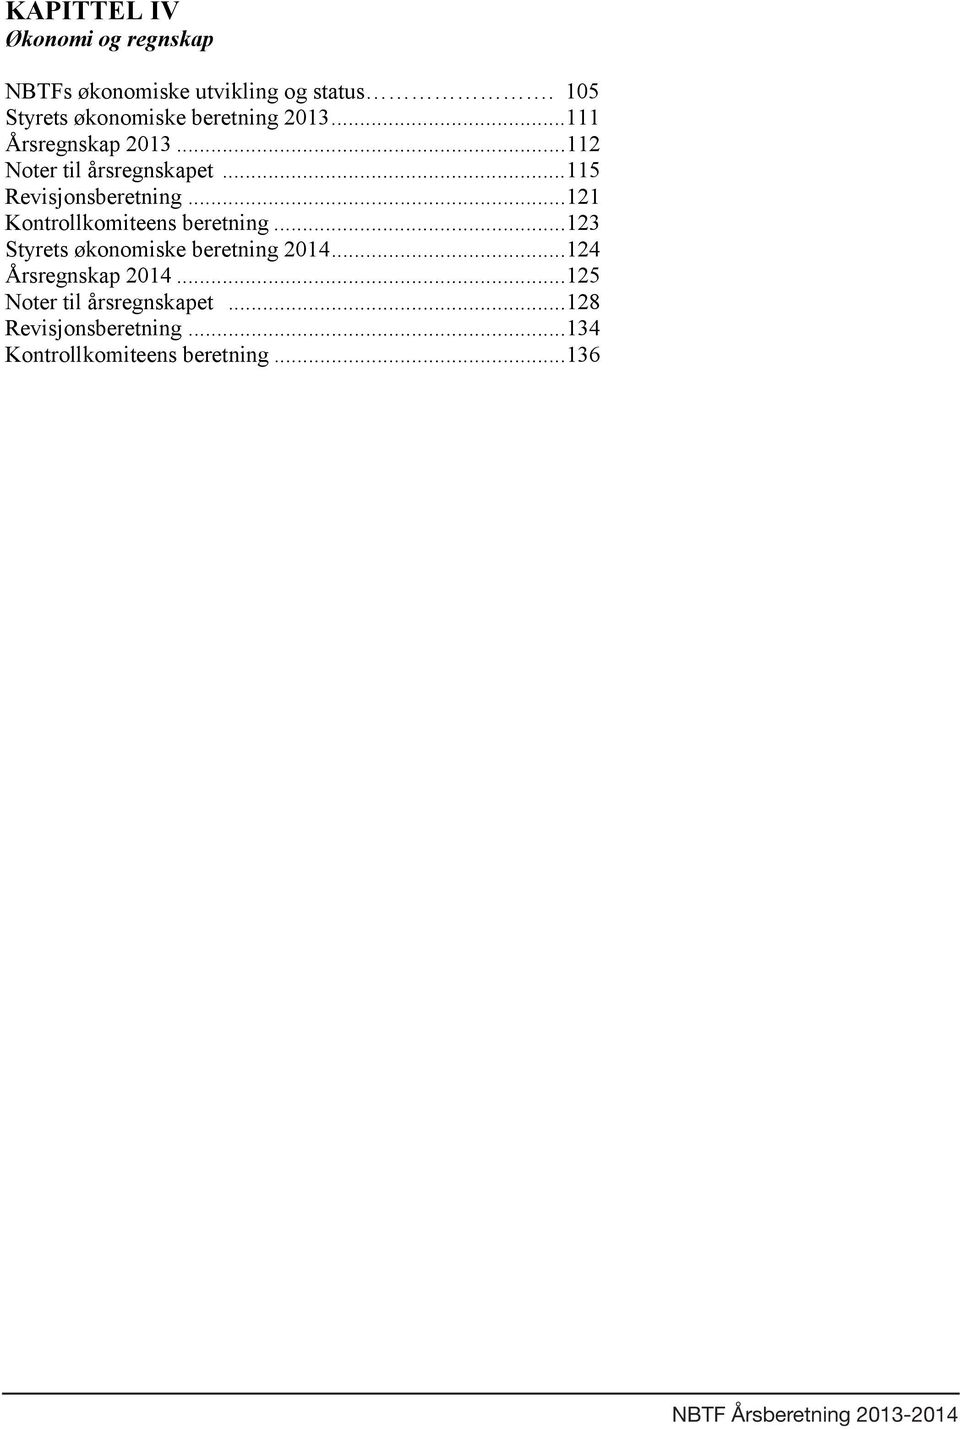 .. 121 Kontrollkomiteens beretning... 123 Styrets økonomiske beretning 2014... 124 Årsregnskap 2014.